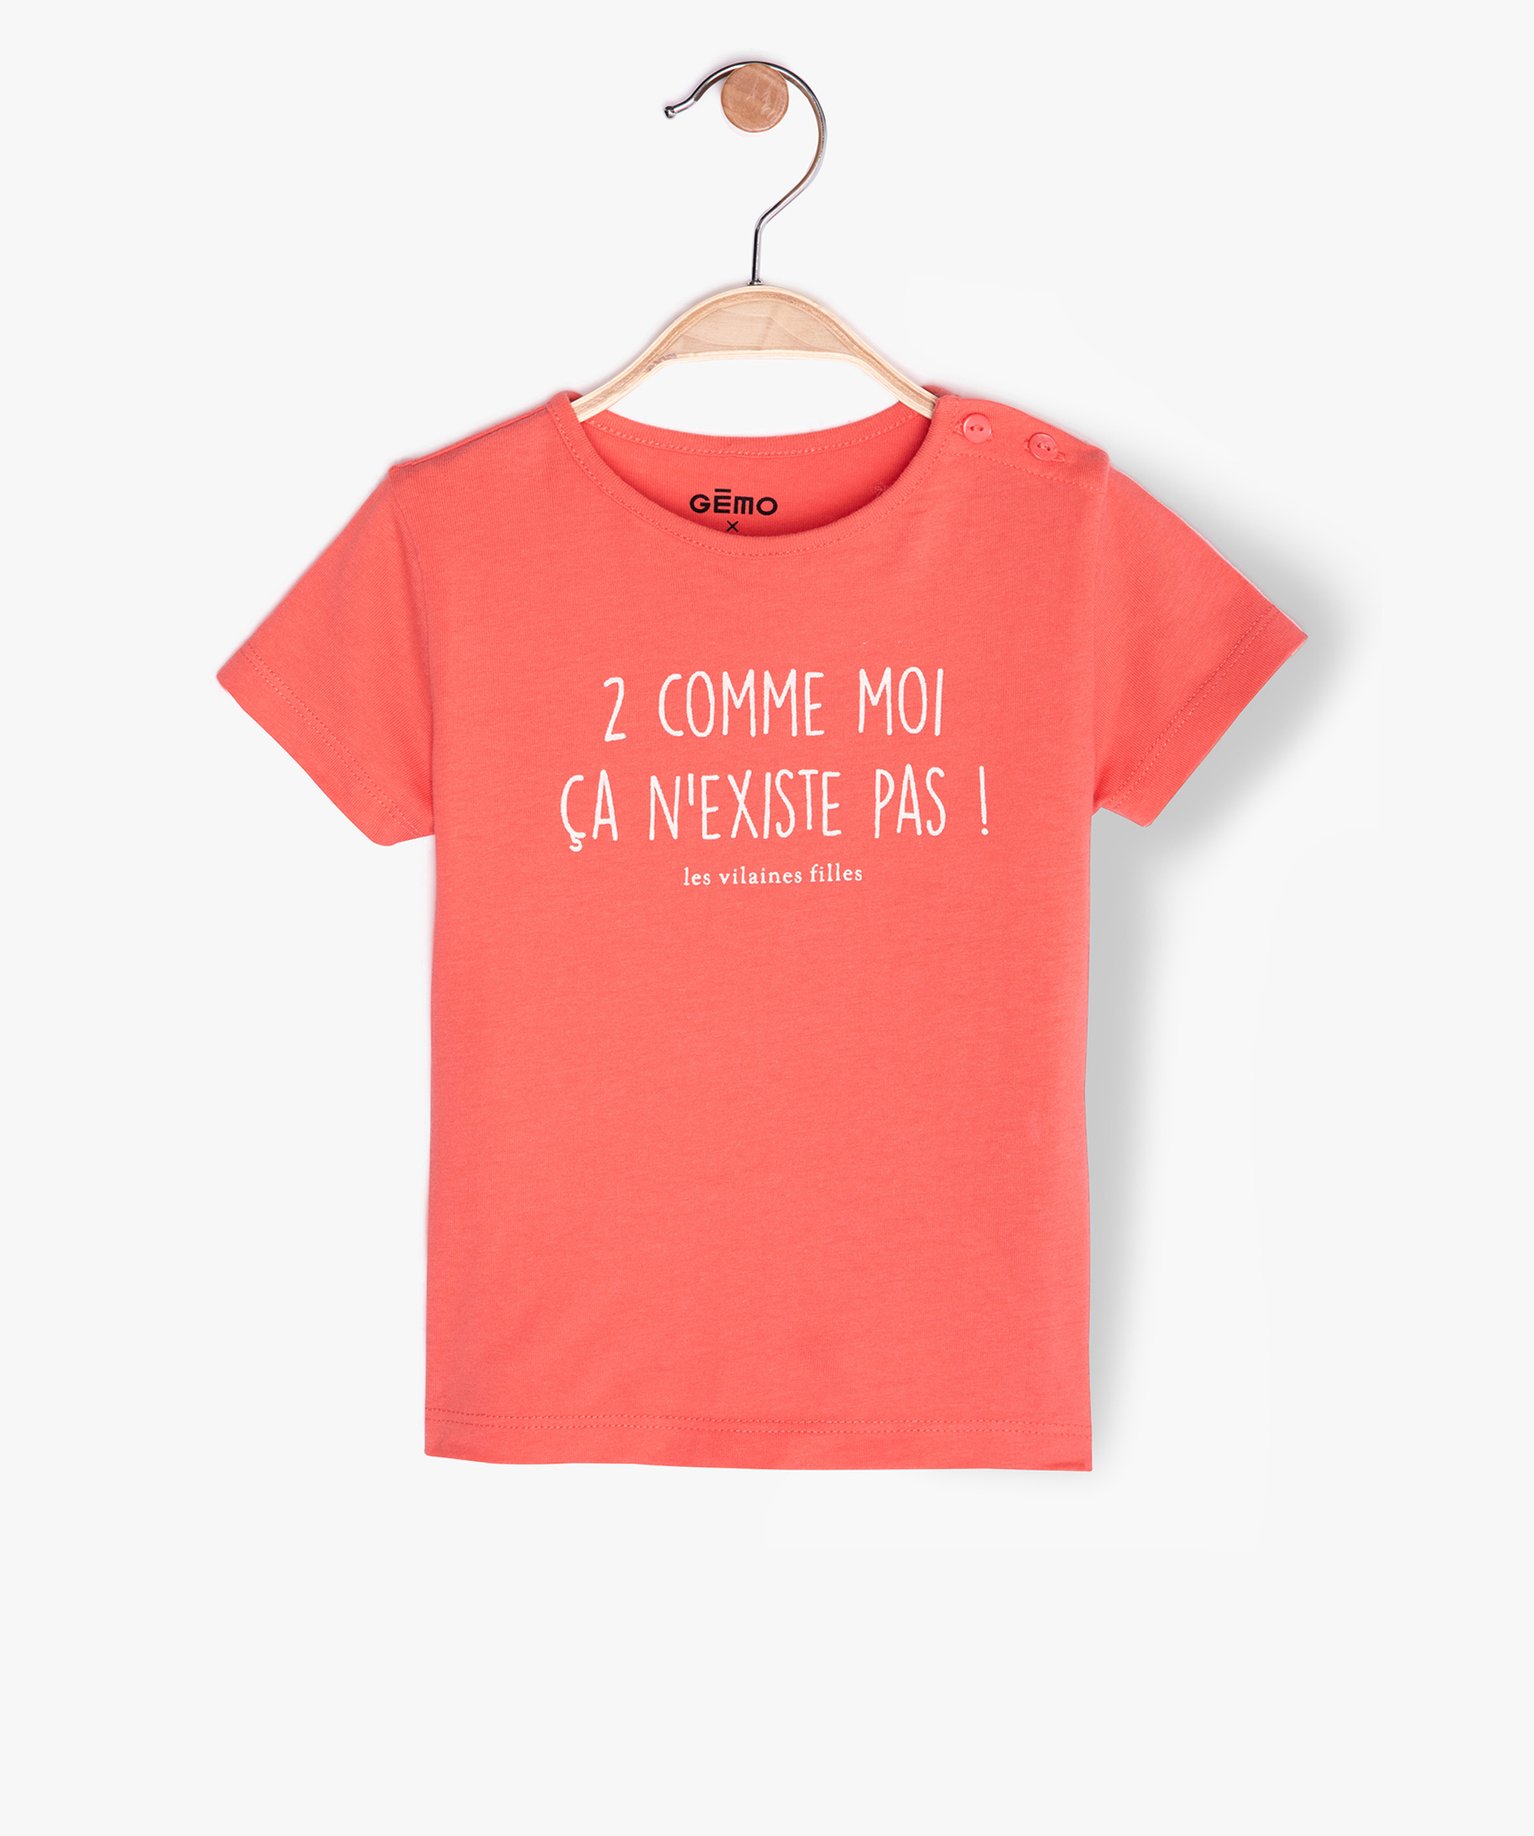 Tee-shirt bébé fille à message humoristique - GEMO x Les Vilaines filles